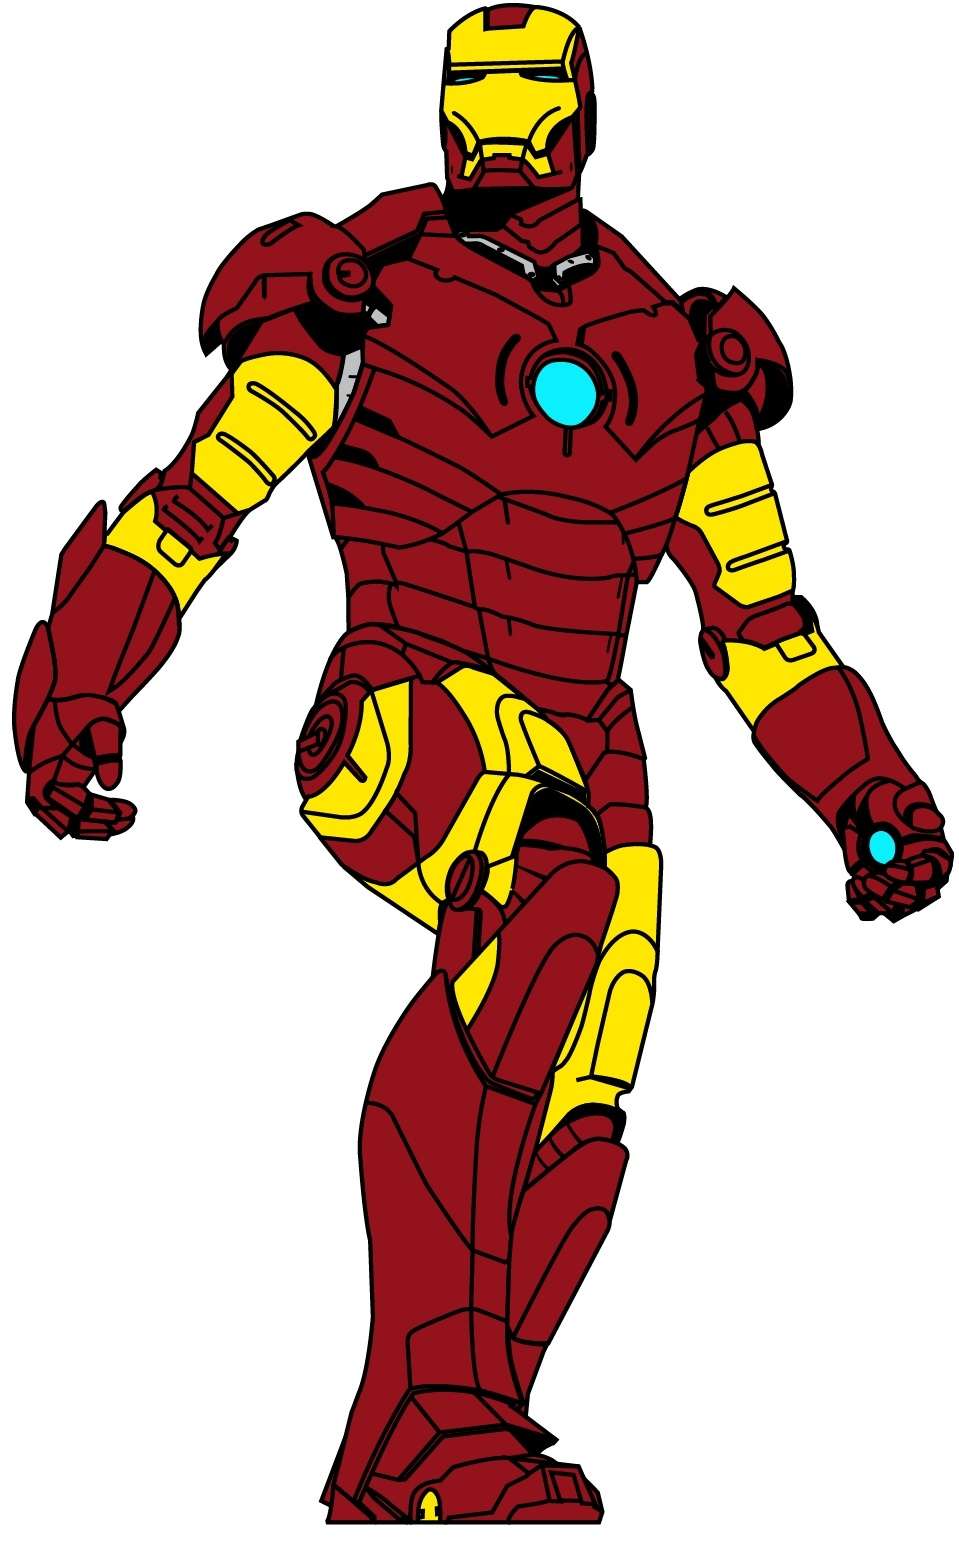 Iron Man Logo png